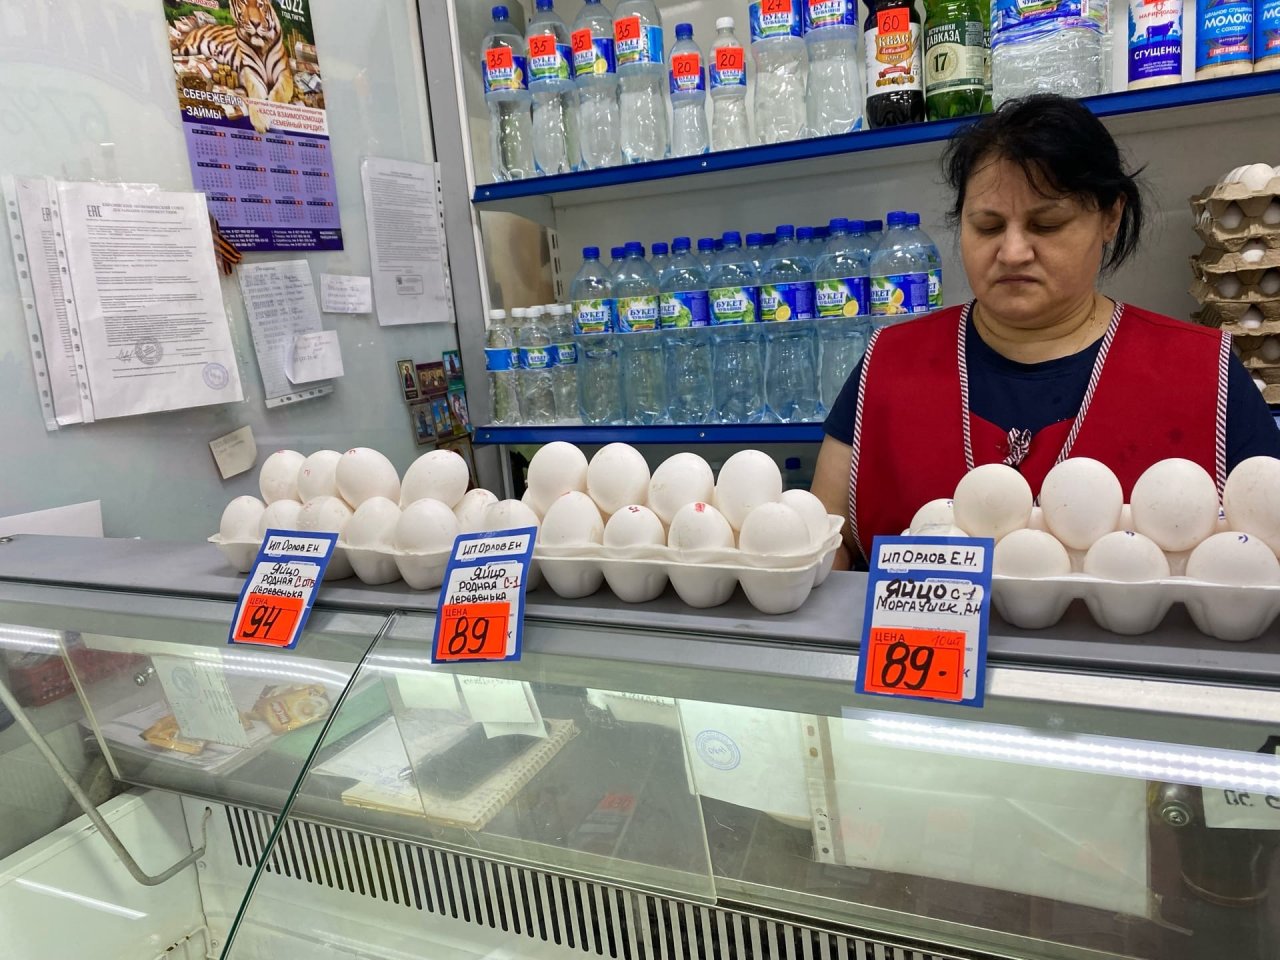 Сколько стоит яйцо сегодня. Сколько стоят яйца. Упаковка яиц супермаркет. Сколько стоят яйца в магазине. Цены на яйца в супермаркетах.